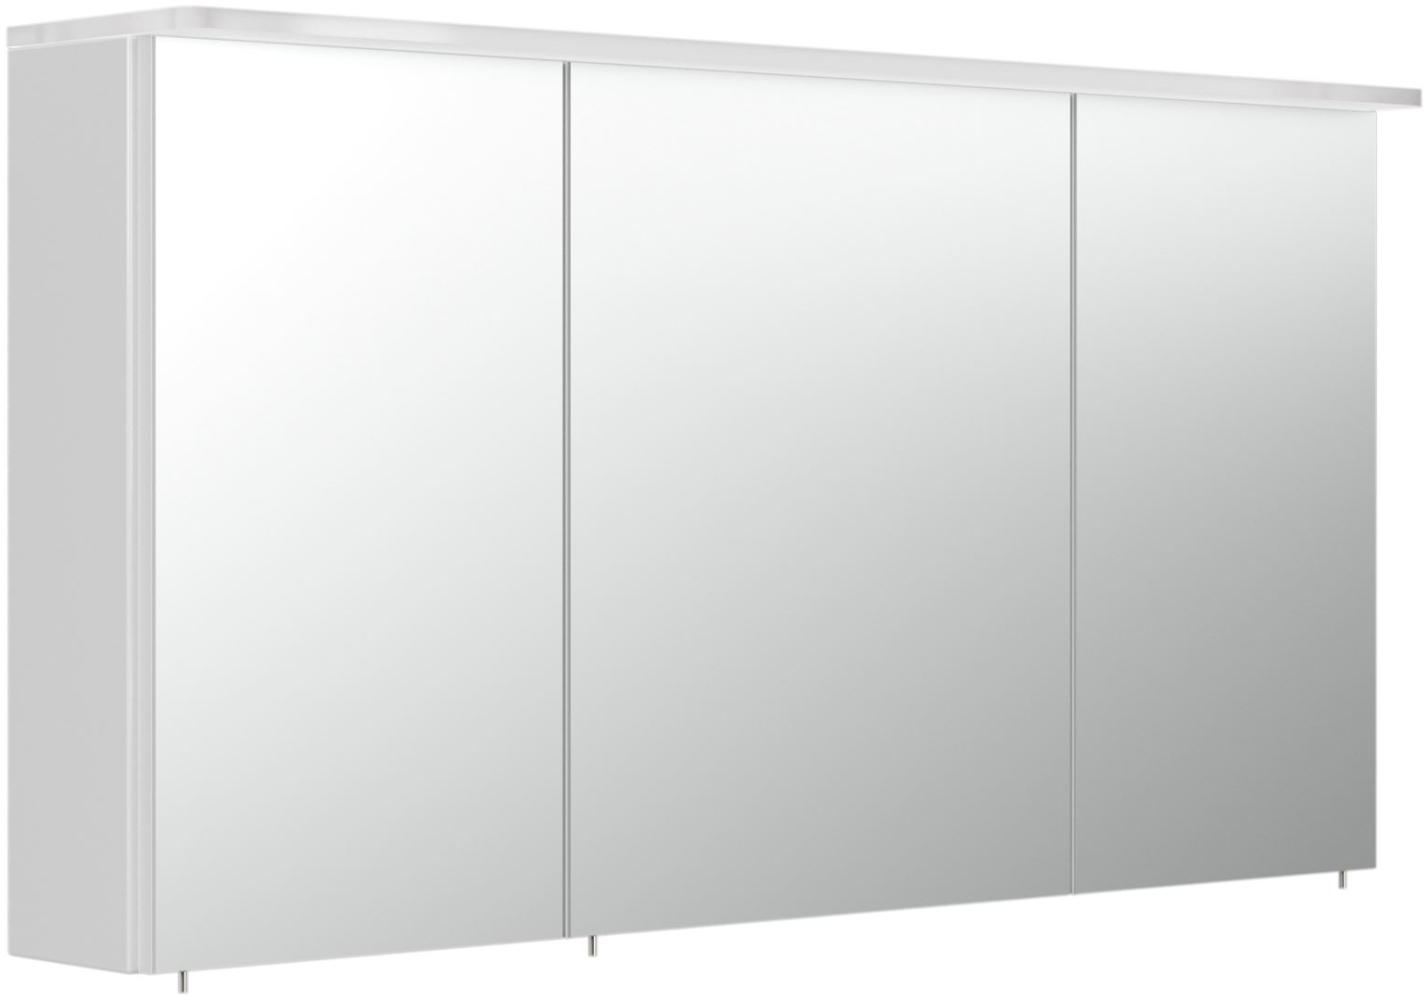 Posseik Spiegelschrank m. Design-Acyrl-LED-Lampe 120cm weiß hochglanz Bild 1